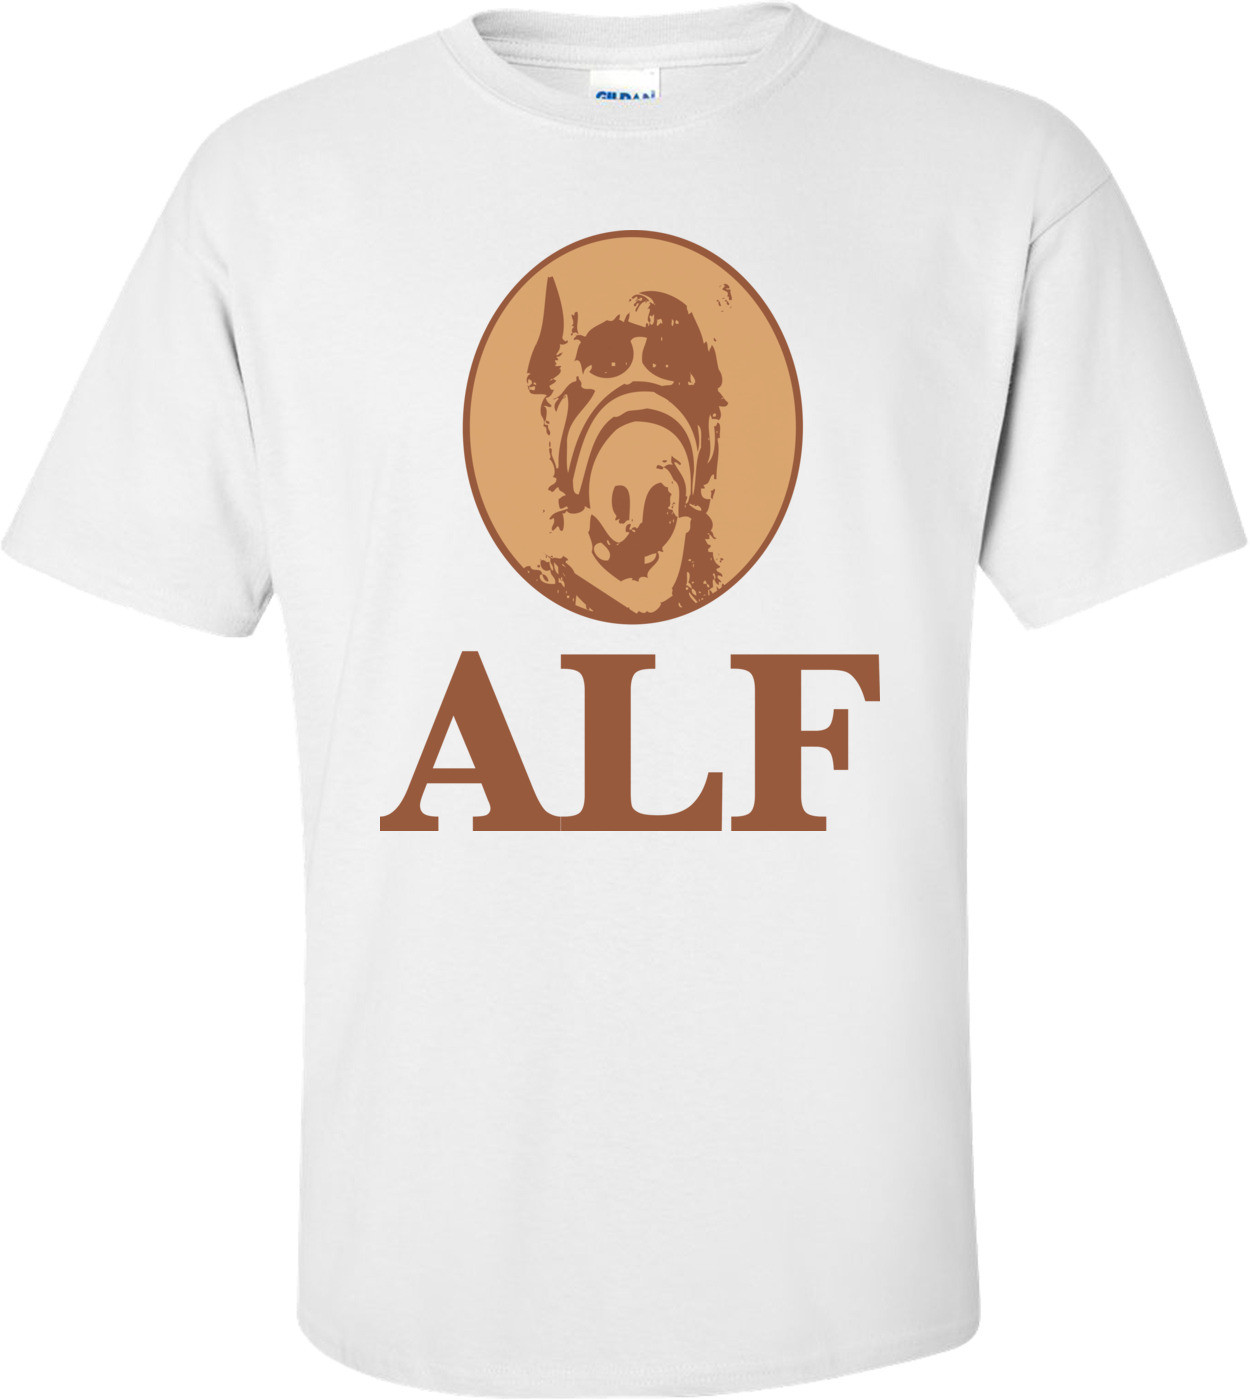 Alf T-shirt 